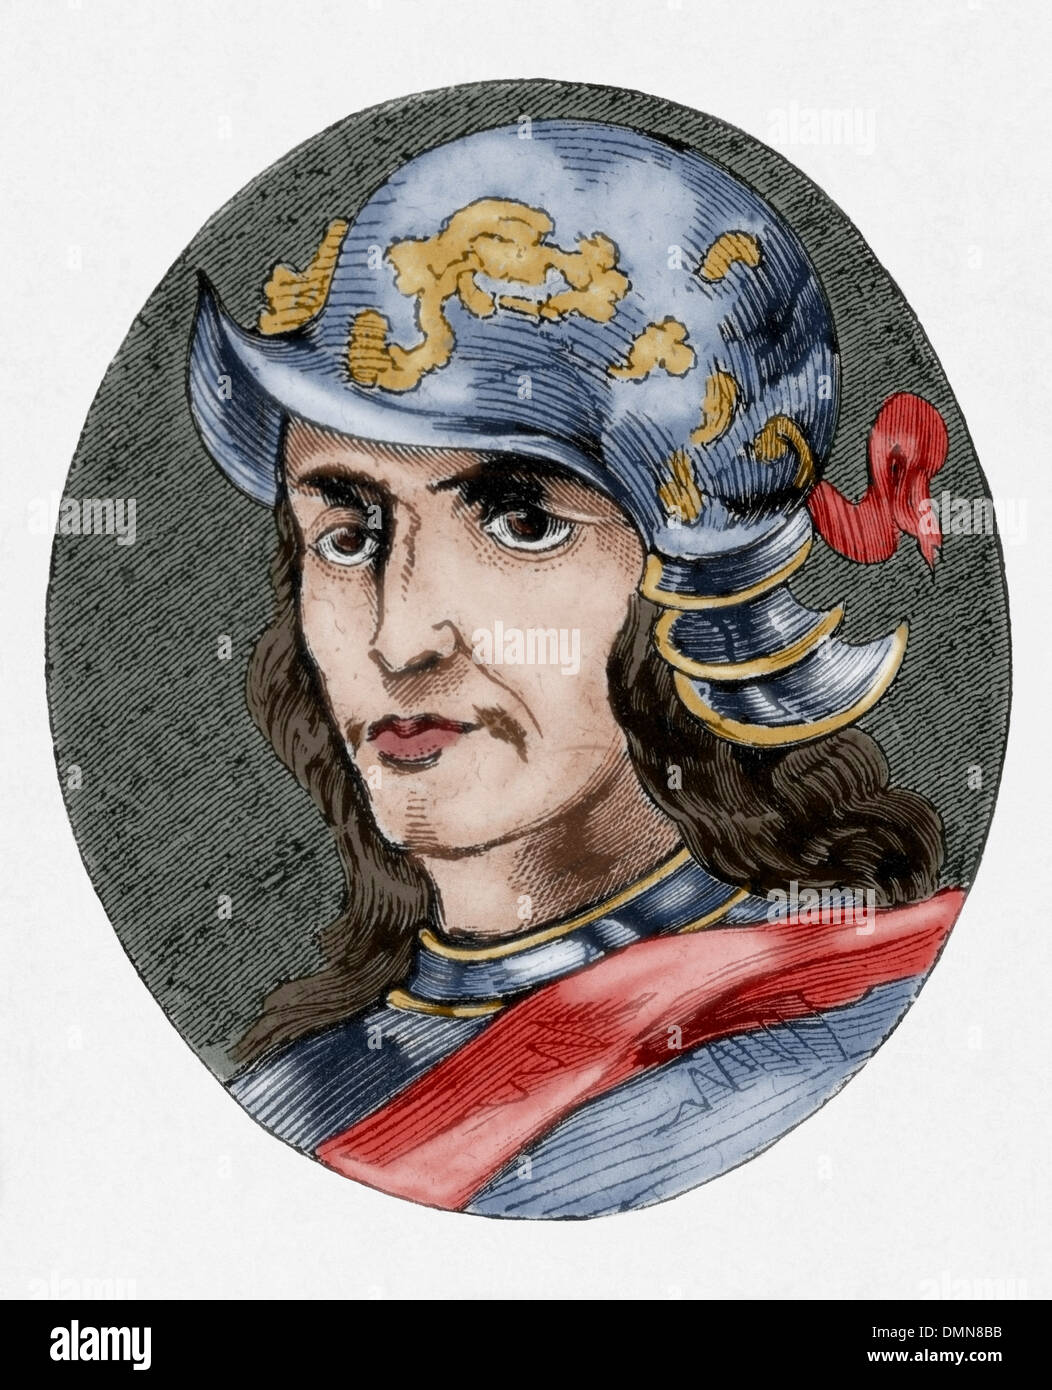 Enrique III (1379-1406). Conocido como Henry el Sufriente o Enrique el enfermo. El rey de la Corona de Castilla. Grabado. Coloreada. Foto de stock